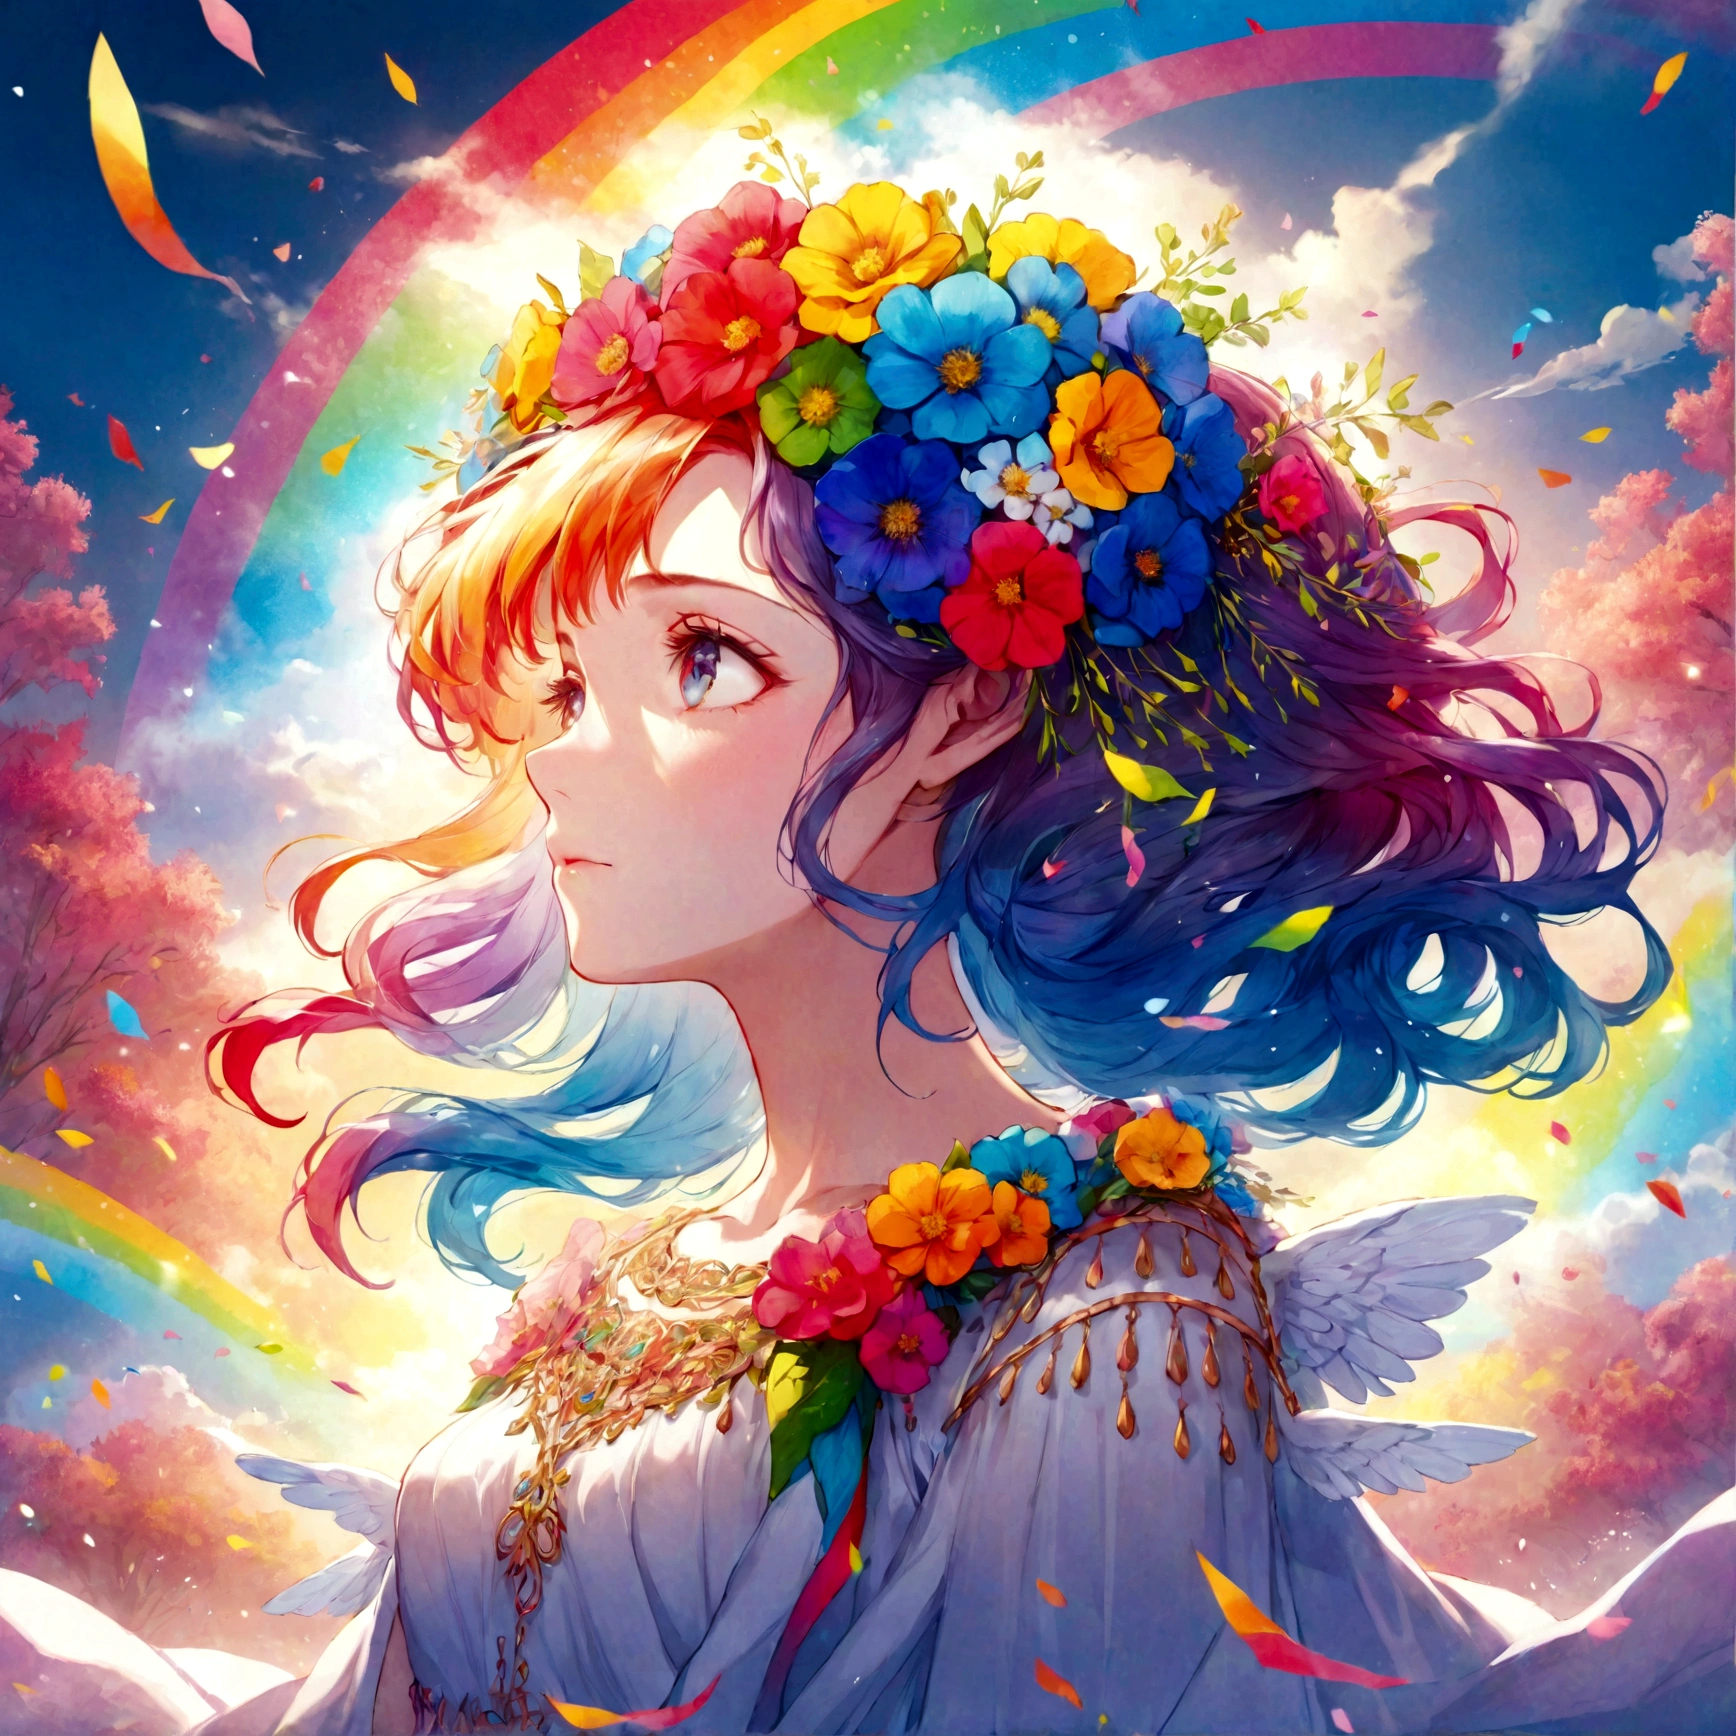 eine Regenbogenversion der Göttin Persephone